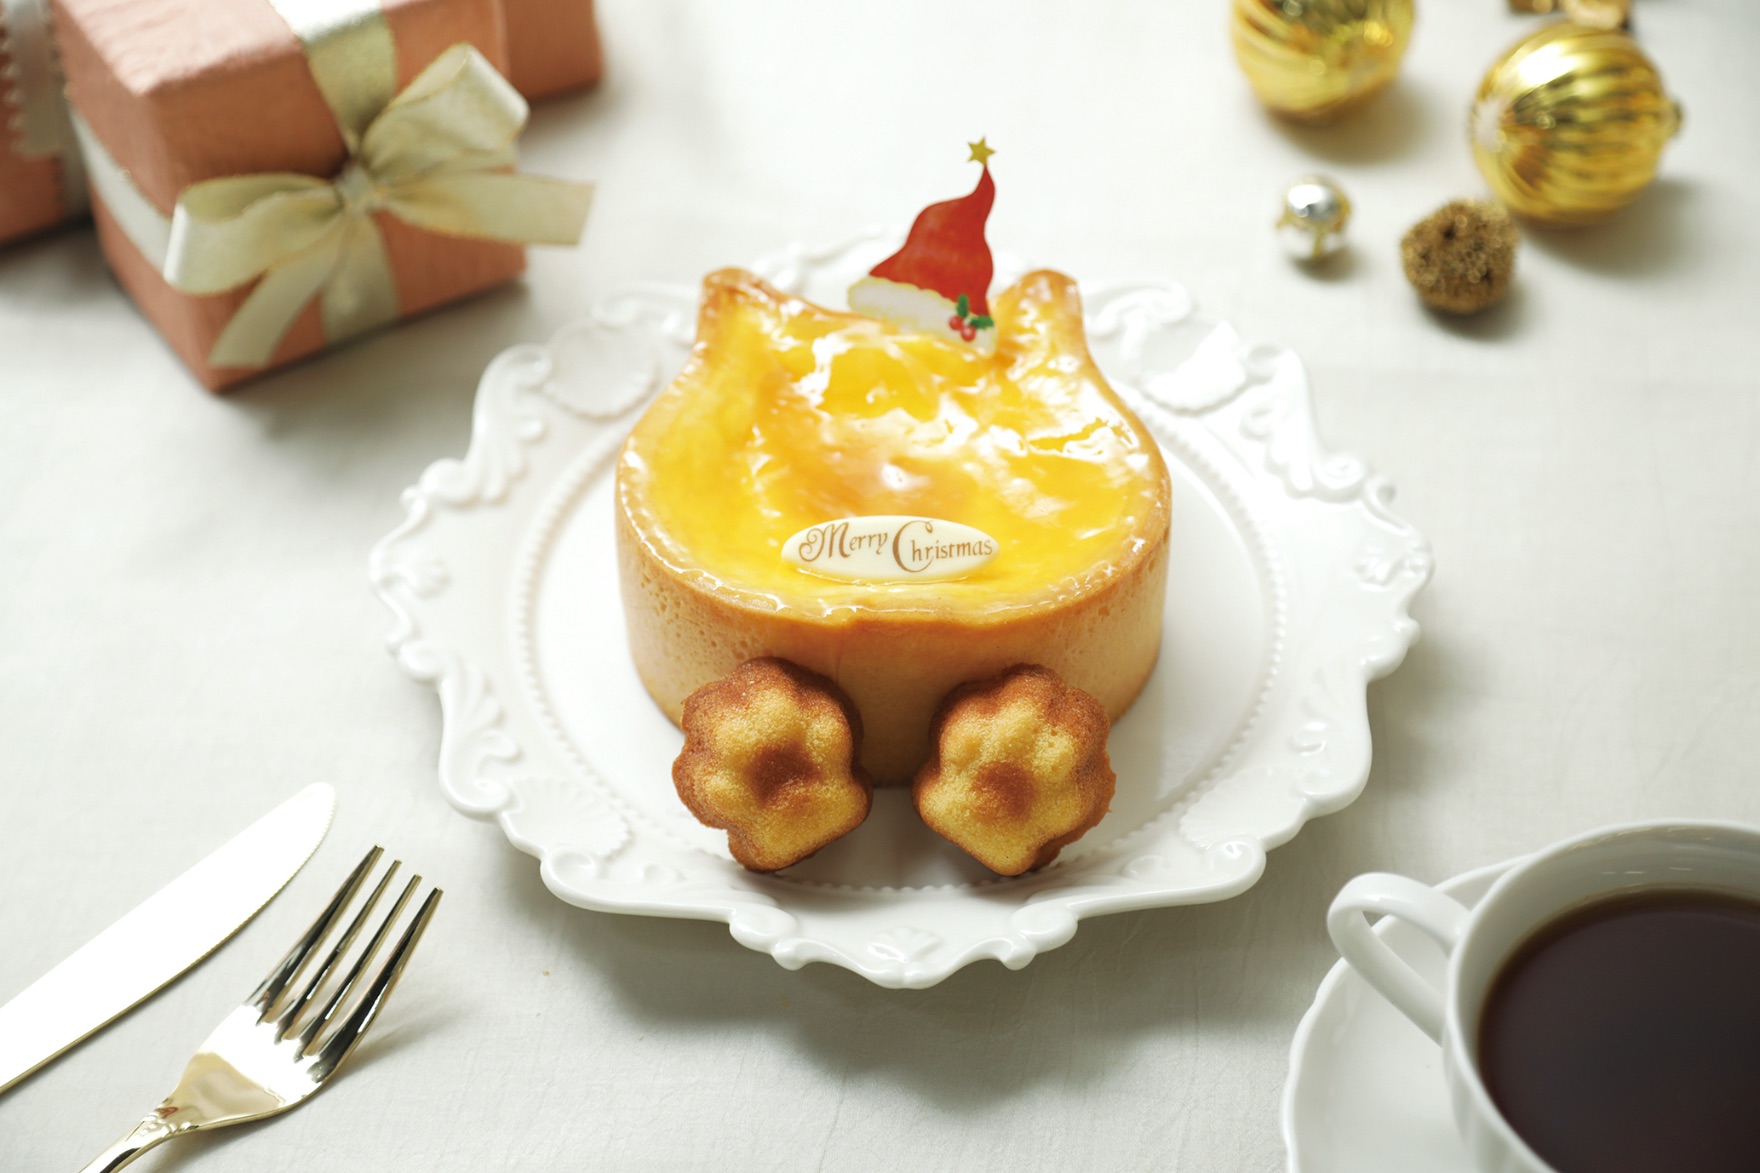 ねこねこチーズケーキのクリスマスケーキ2020 Neko neko christmas cheesecake 蛋糕1